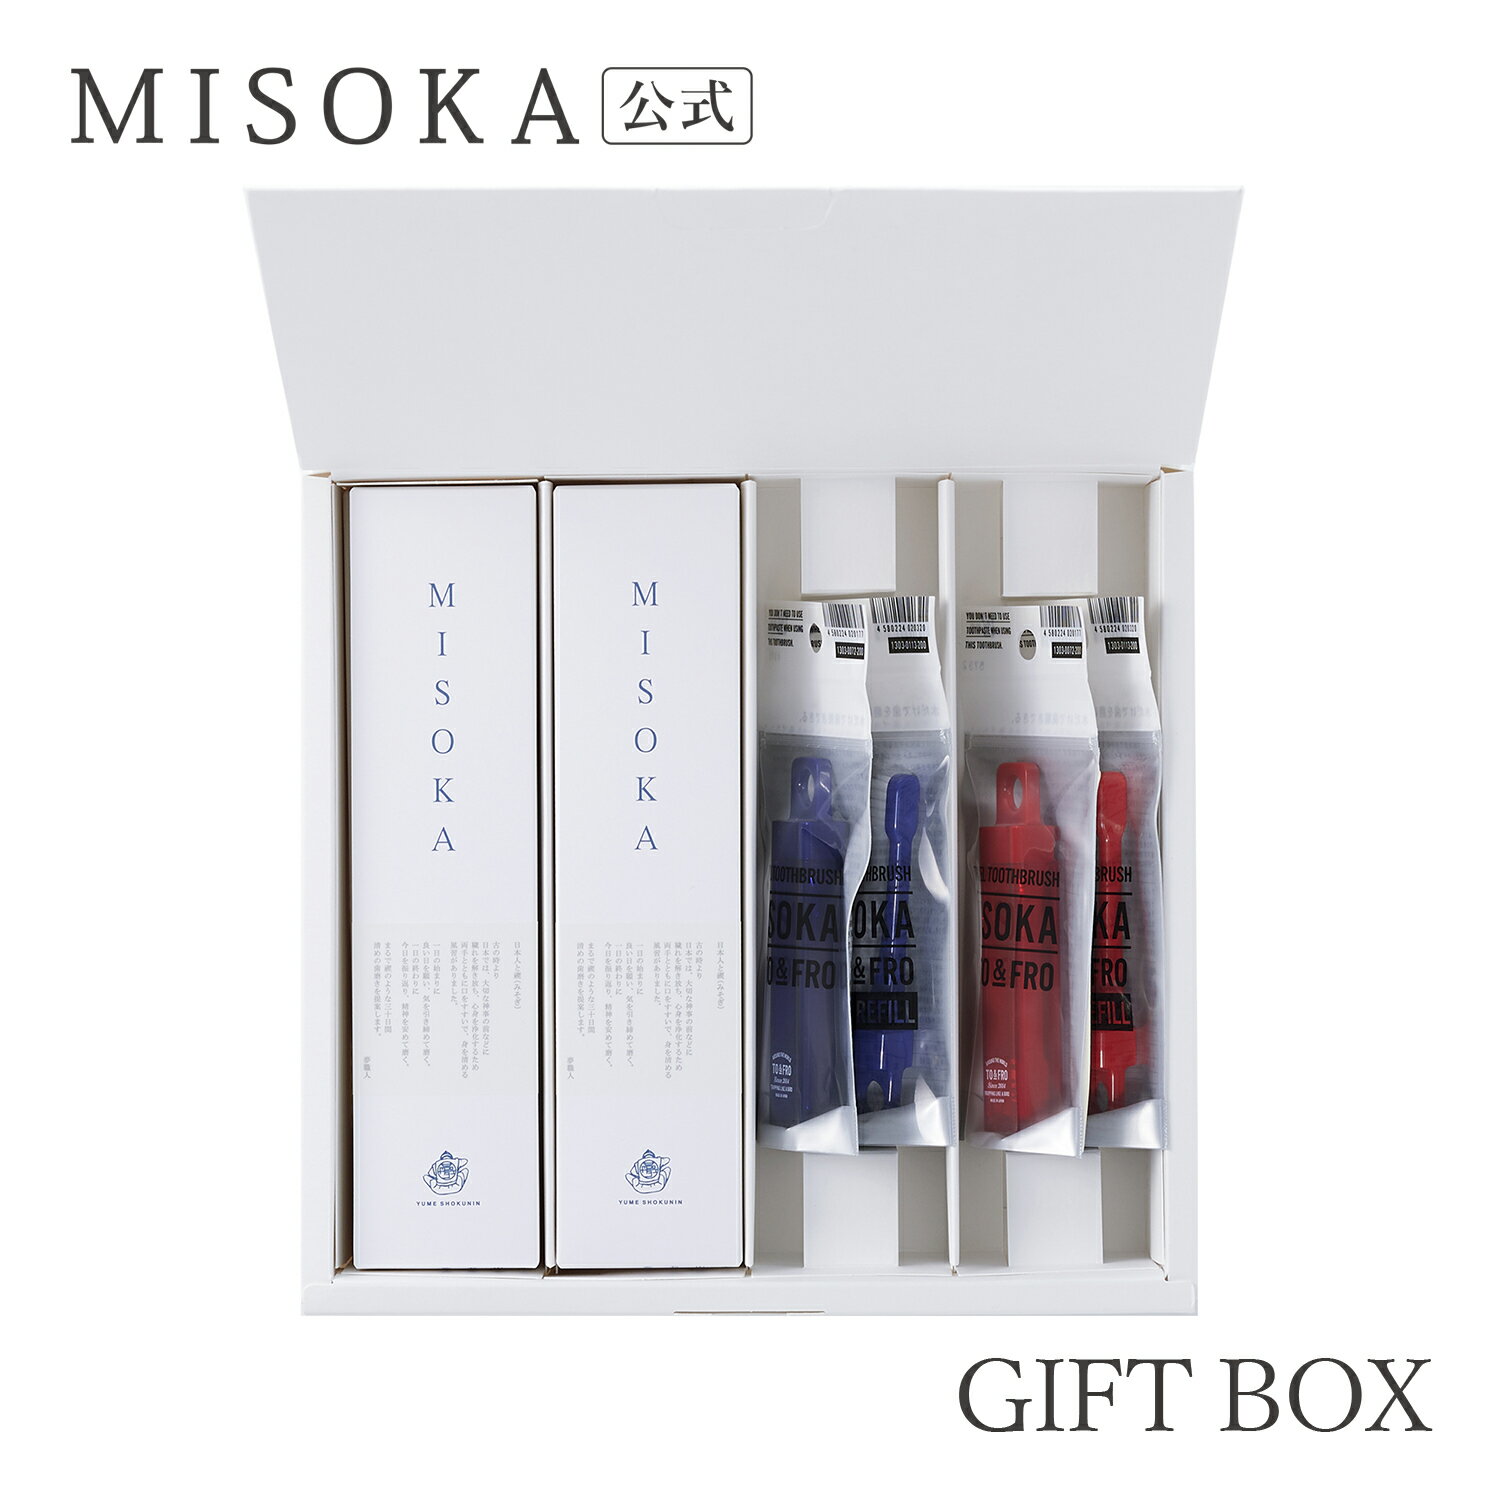  MISOKA(ミソカ) 歯ブラシ MISOKA4本とトラベル2本、替ブラシ2本のセット 9000円  日本製 